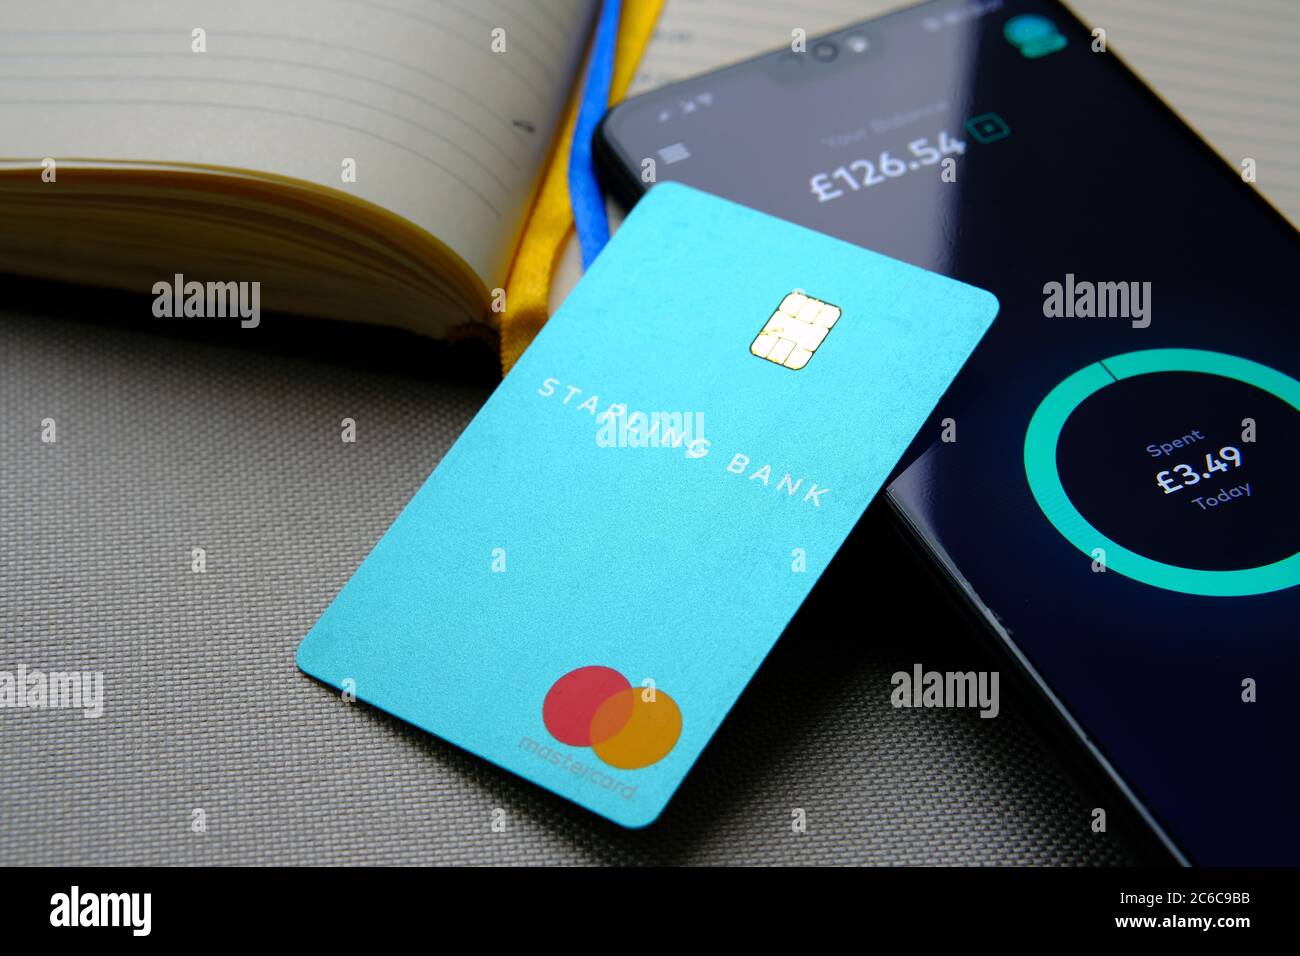 Stone / UK - 8 luglio 2020: La carta Starling Bank è posizionata sulla parte superiore dello smartphone con l'app Starling che mostra il saldo sullo schermo. Foto Stock